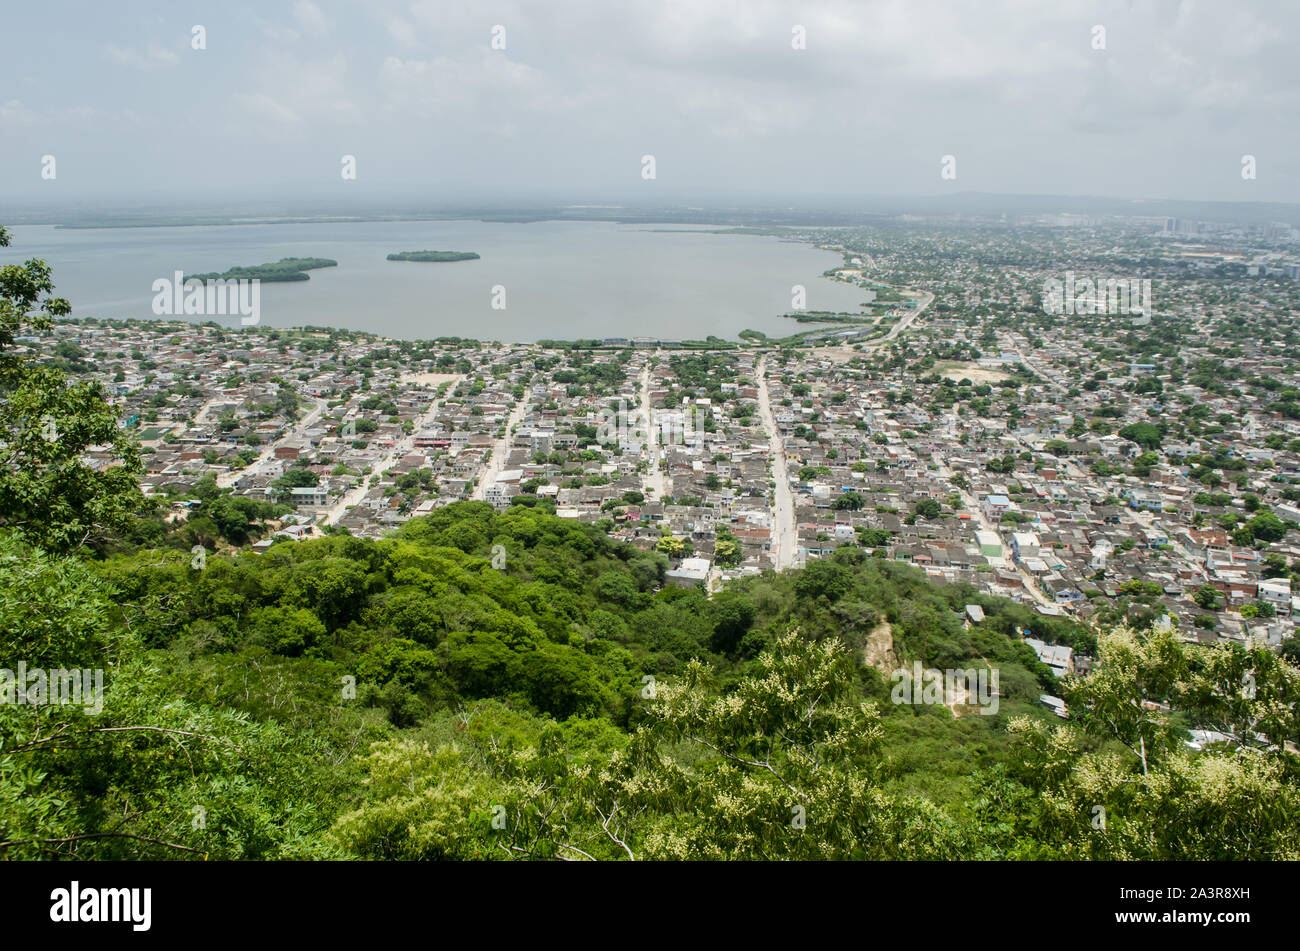 View of La Virgen Swamp and surrounding neighborhoods as seen from Cerro de La Popa, the highest point in Cartagena Stock Photo